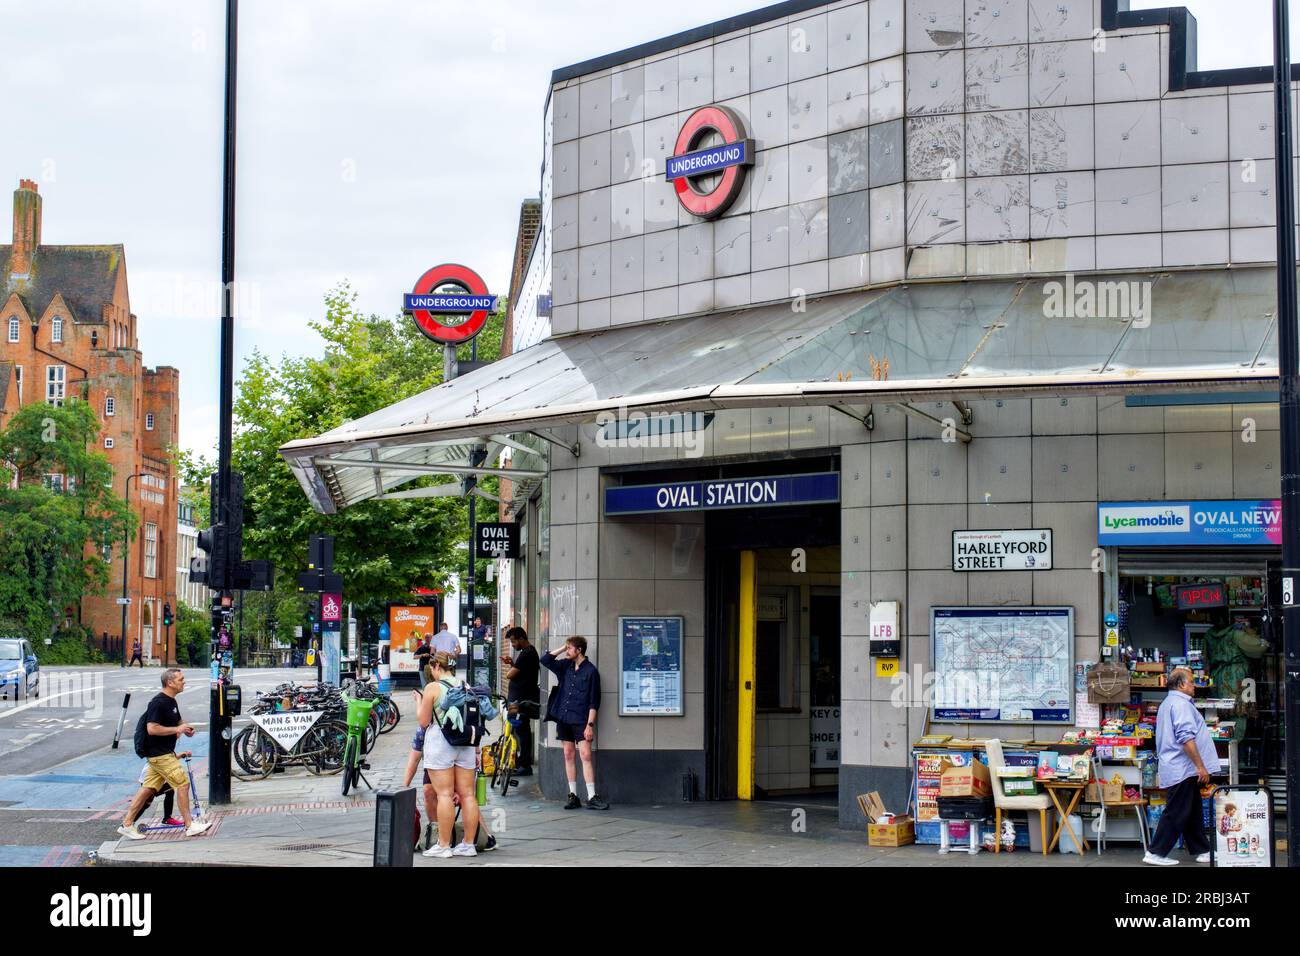 Stazione della metropolitana Oval, Kennington, Borough of Lambeth, Londra, Inghilterra, REGNO UNITO Foto Stock